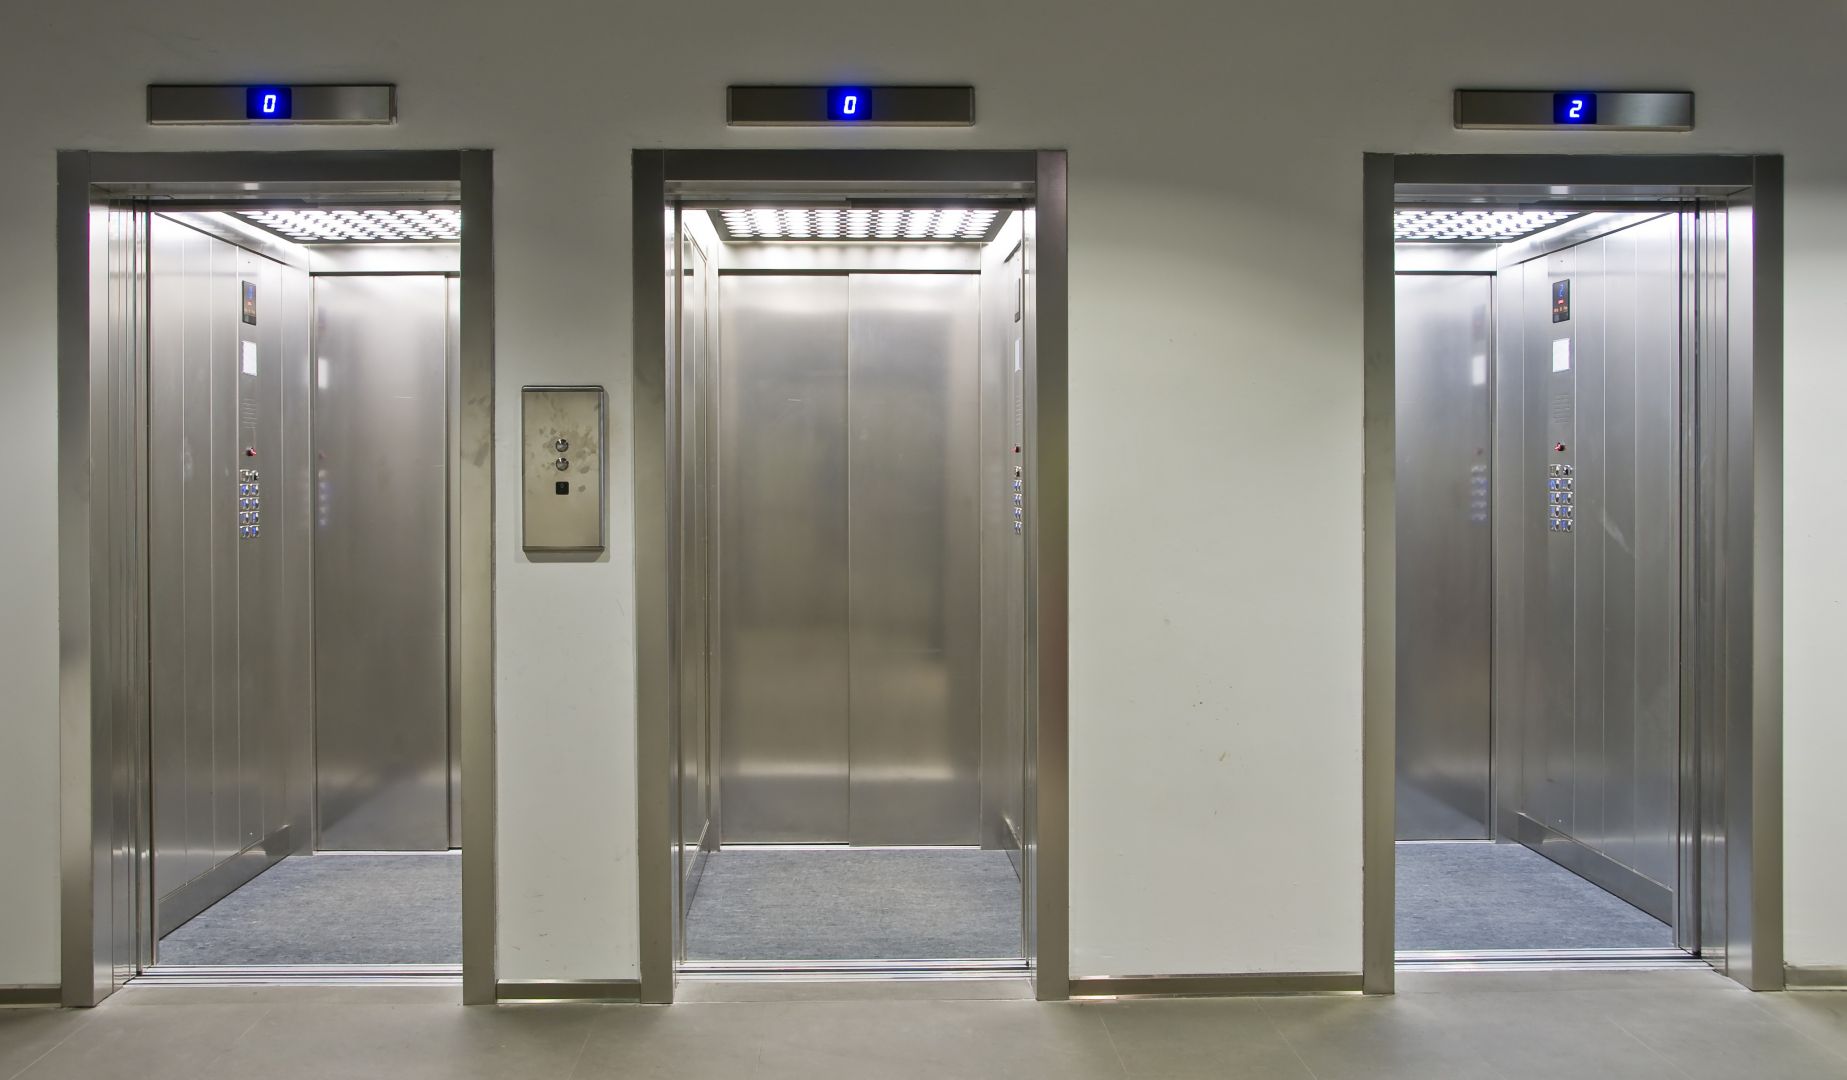 Zakázka na výstavba výtahu (Výtahy a servis) - Cheb